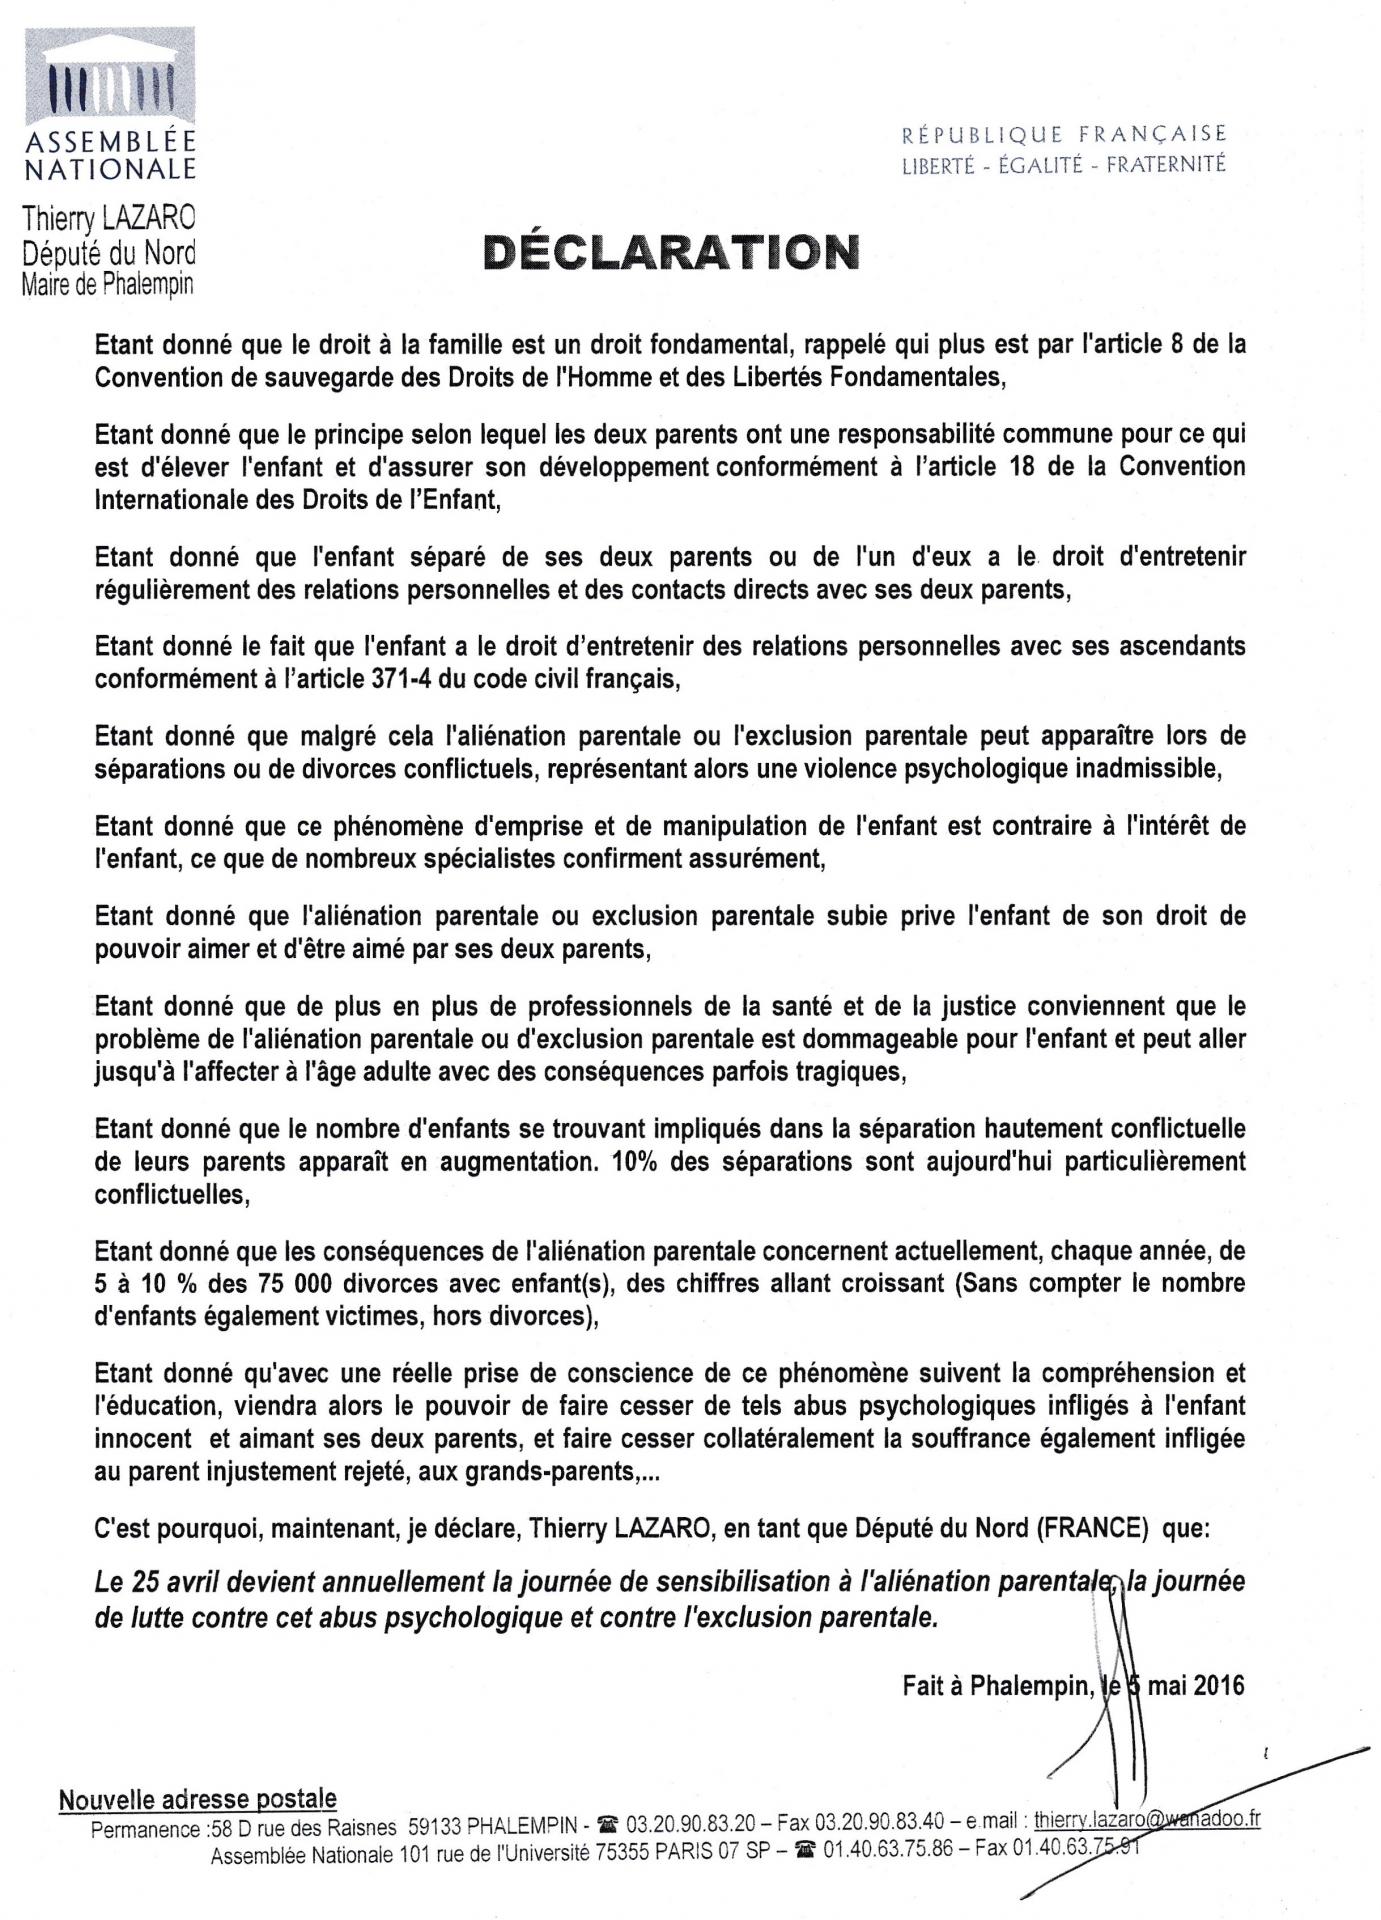 Declaration 05 05 2016 depute du nord lazaro